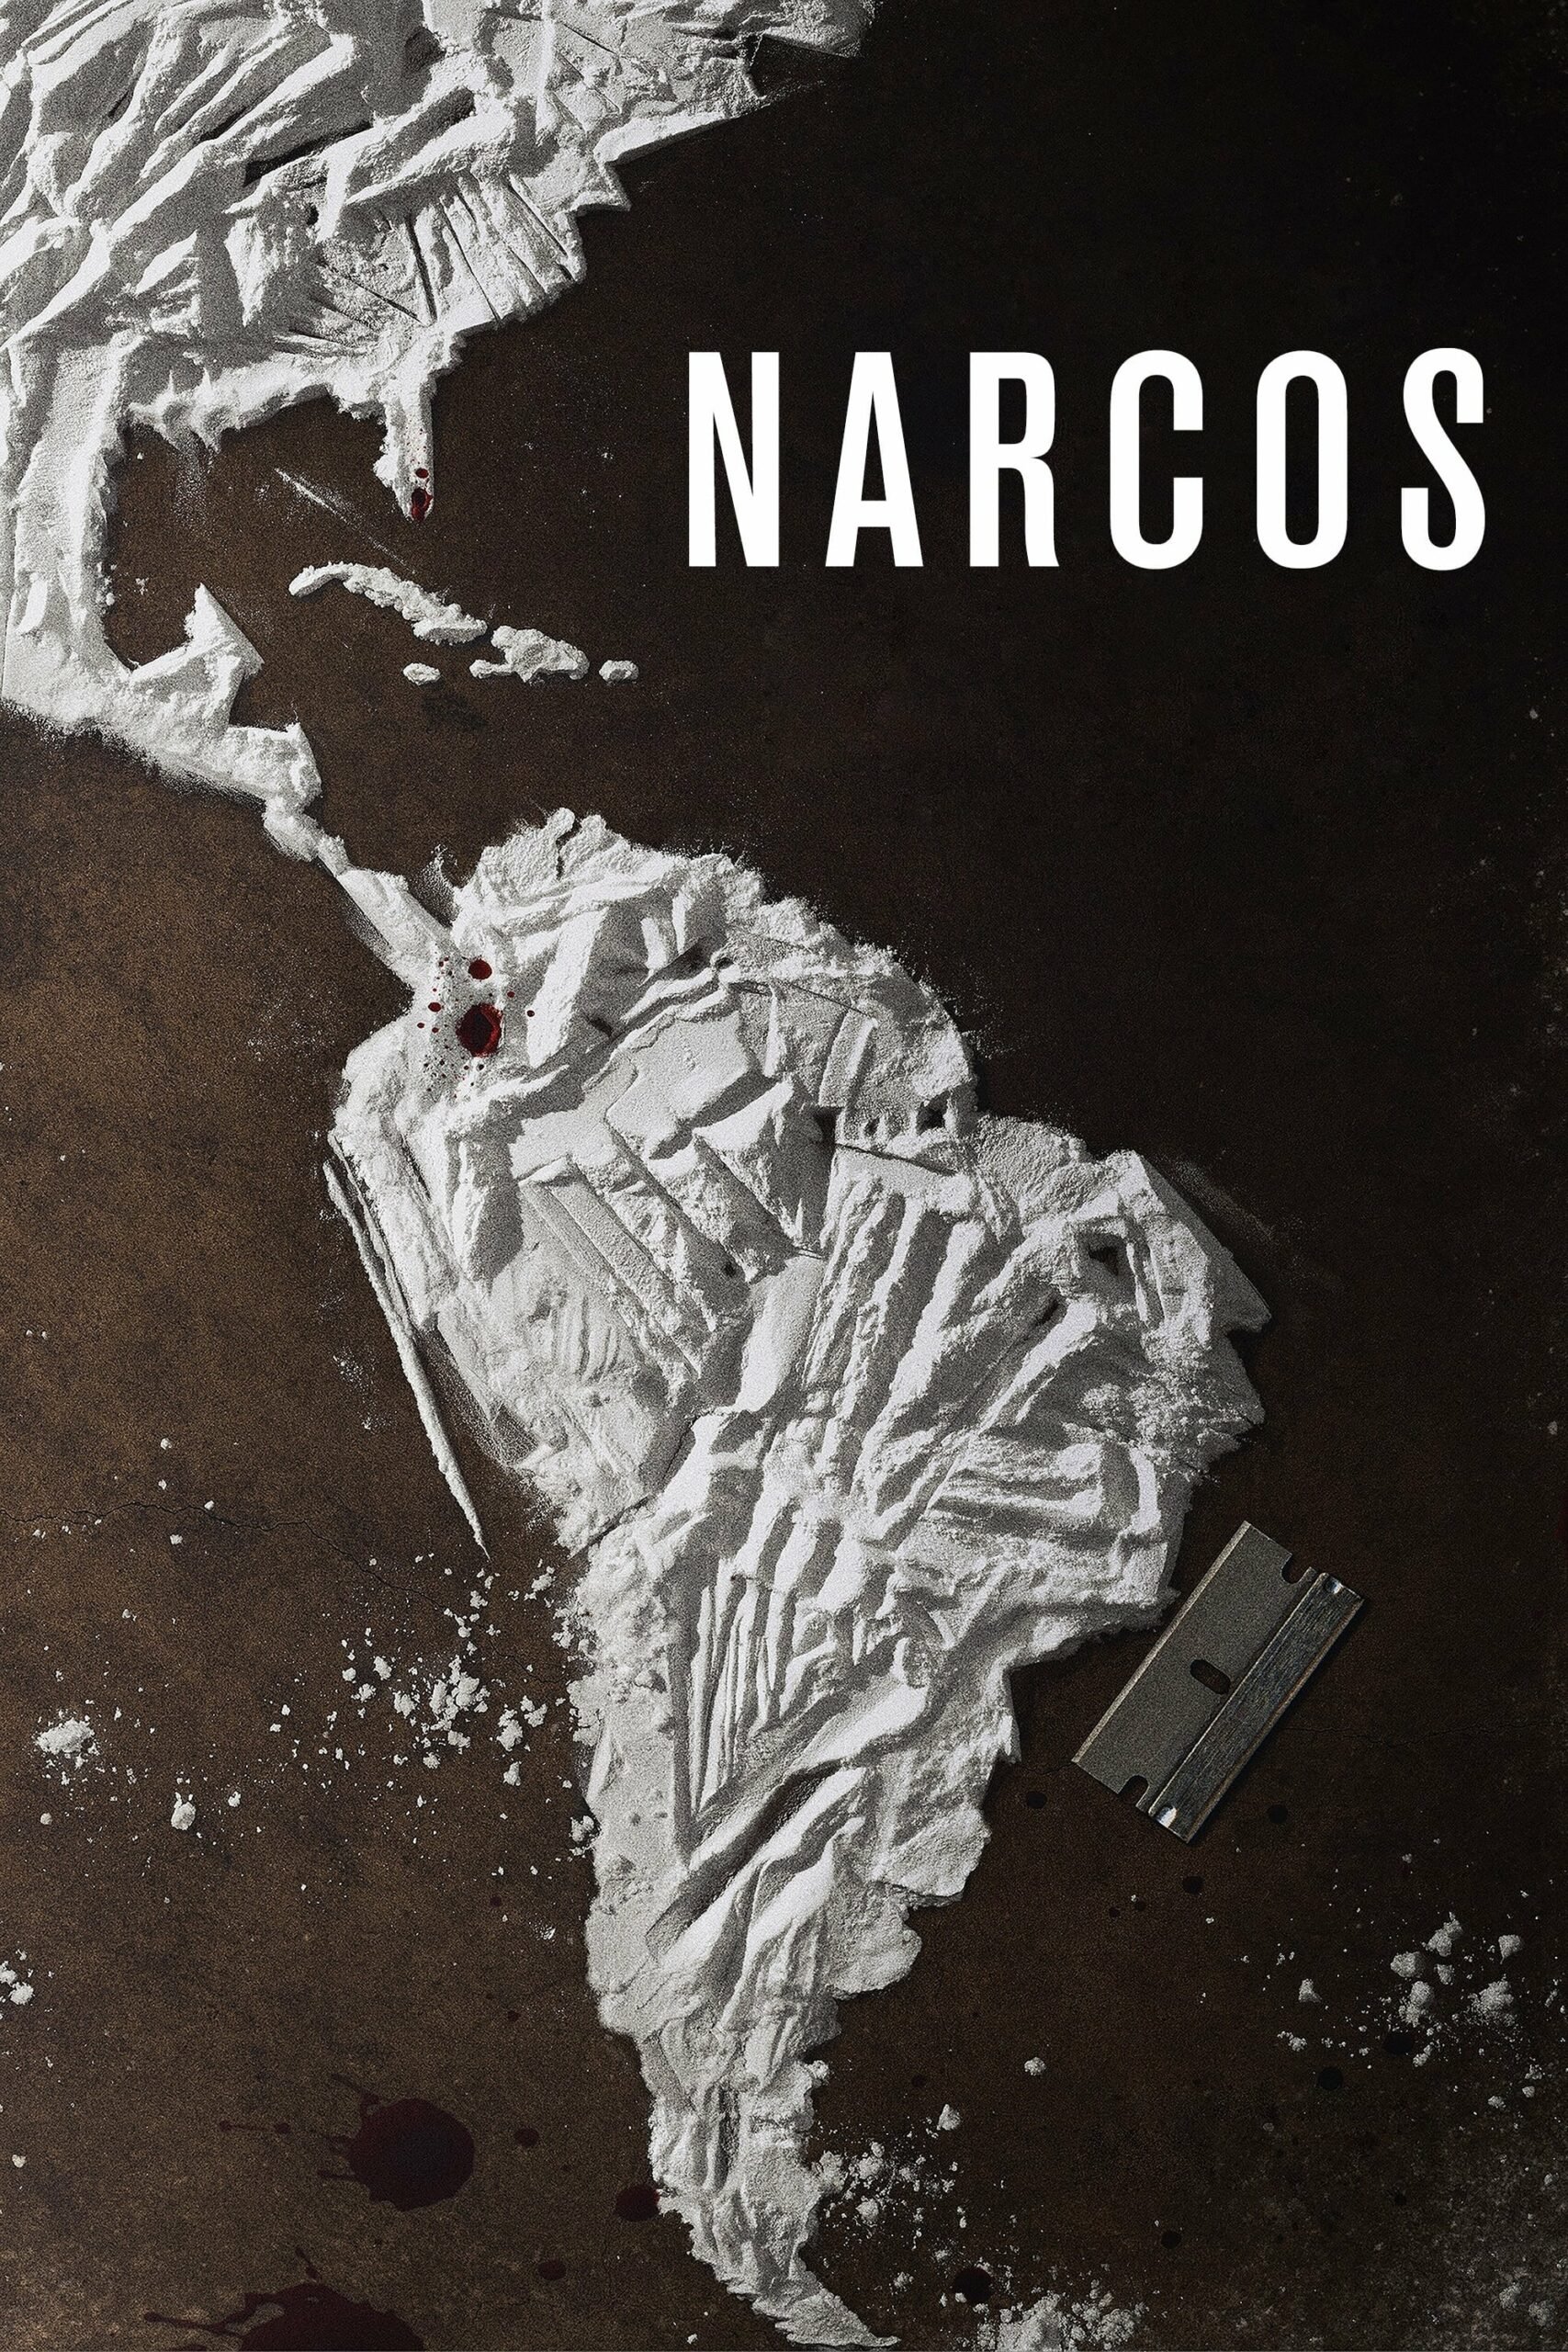 Plakát pro film “Narcos”